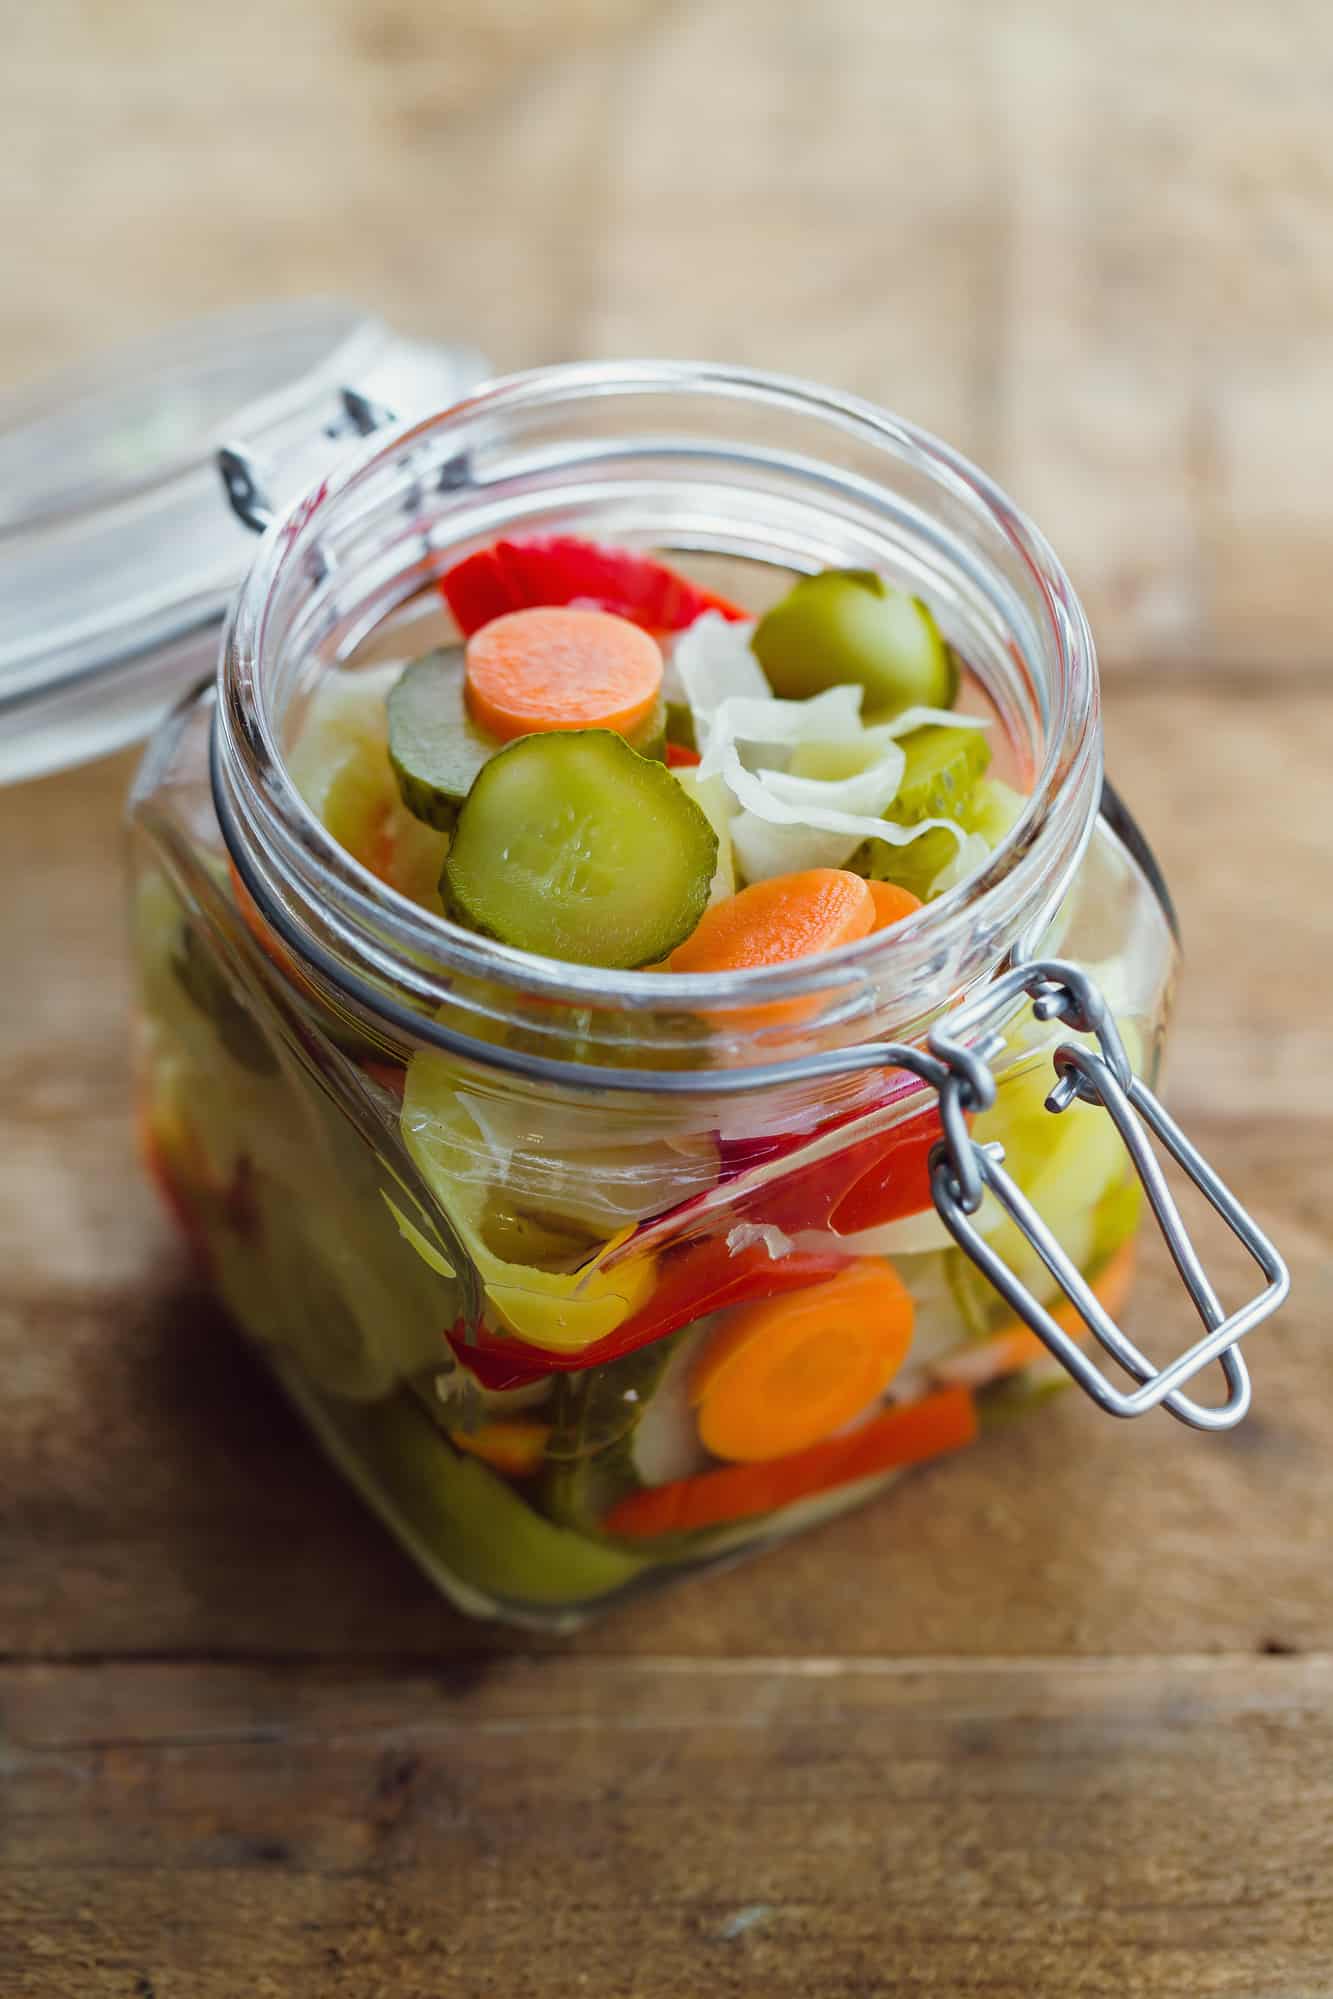 Pickled Middle Eastern vegetables  (torshi) in glass jar.